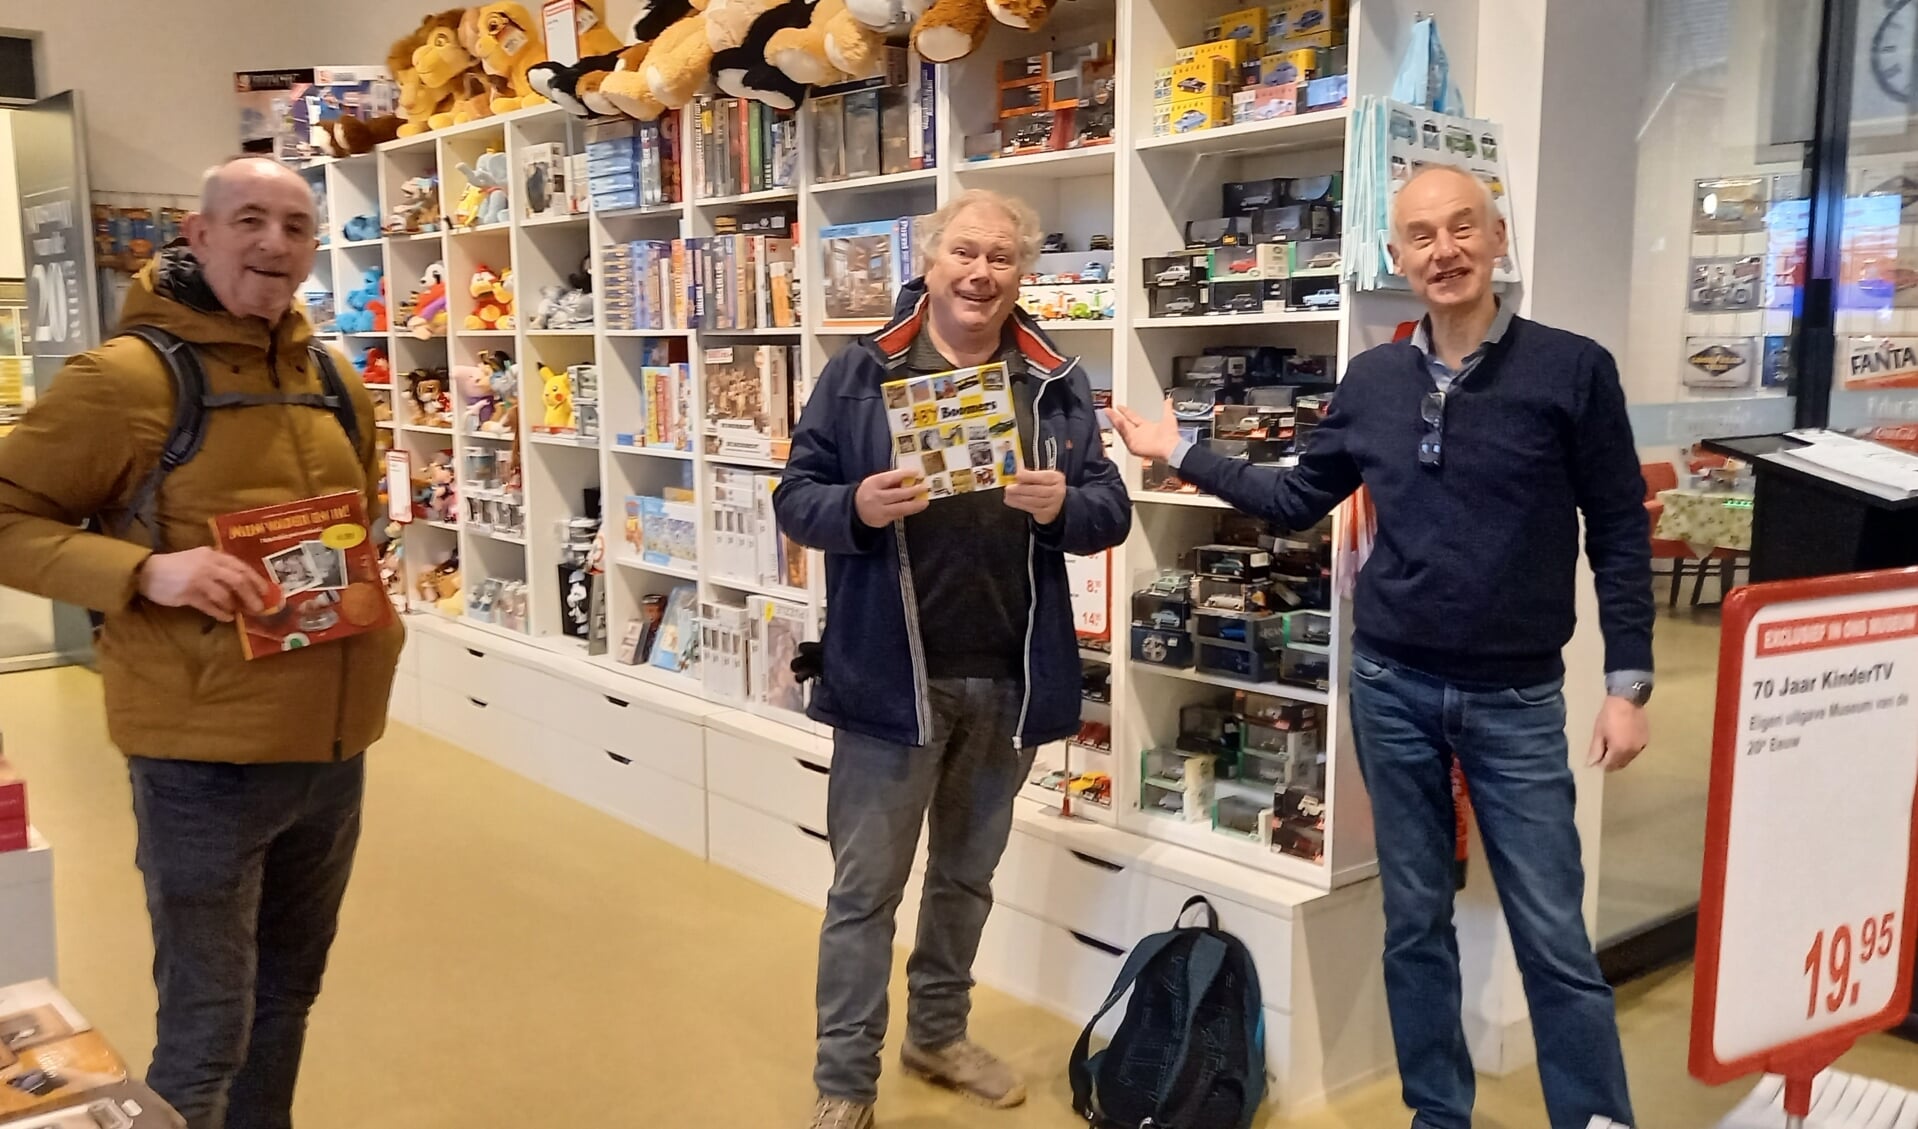 De eerste bezoekers woensdagochtend waren Ton van Alphen en Bart Buys uit Zwanenburg die speciaal voor het museum naar Hoorn afreisden. Ze werden doorWim van de Water van het museum verrast met een nostalgisch boek uit de museumwinkel.